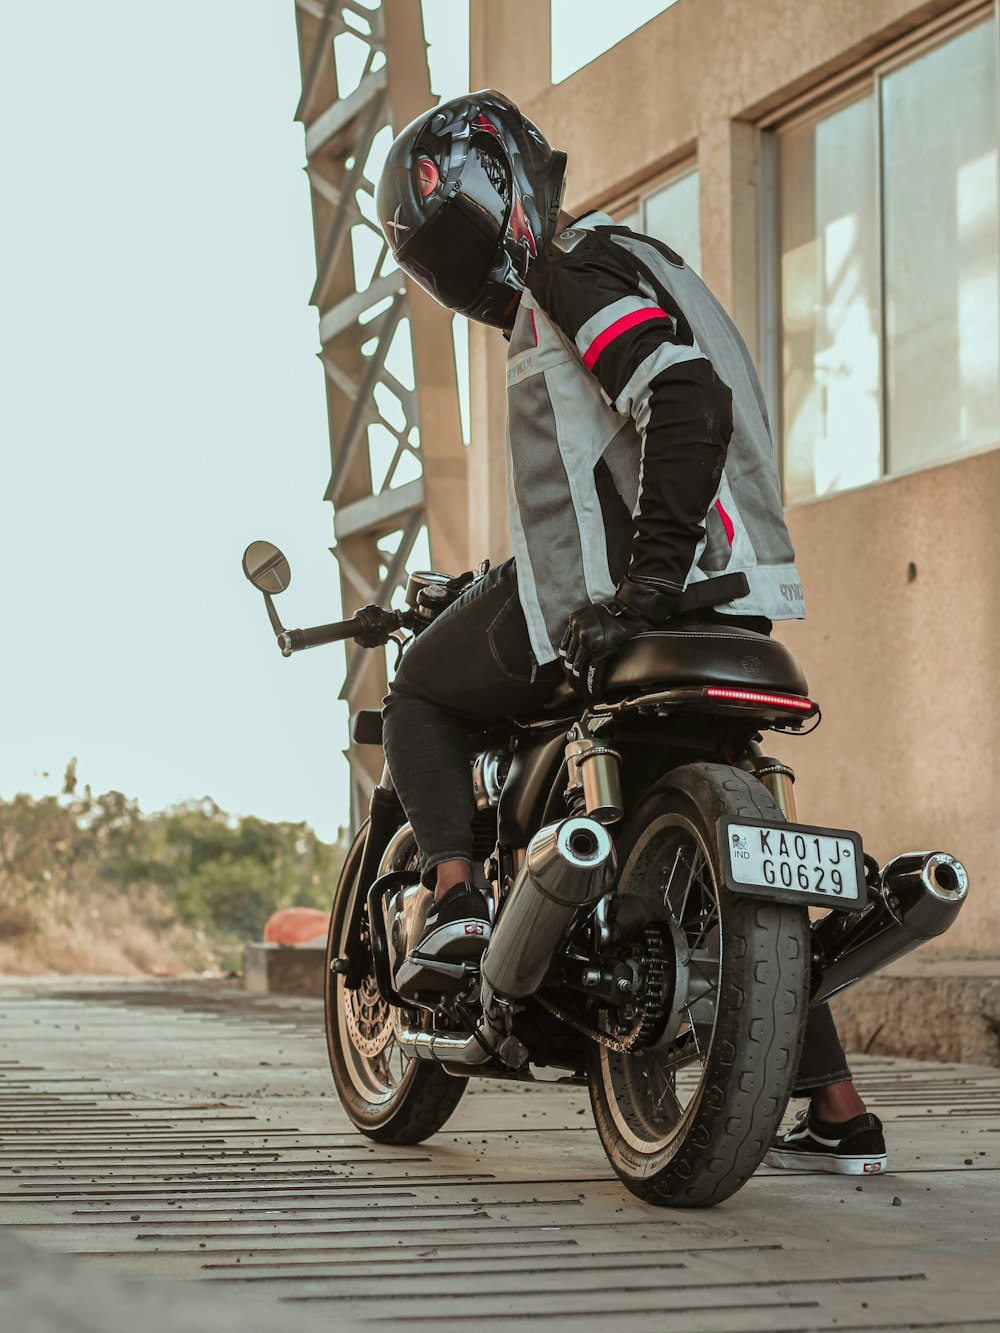 uomo in tuta da motociclista nera e rossa in sella a una moto sportiva nera e rossa durante il giorno